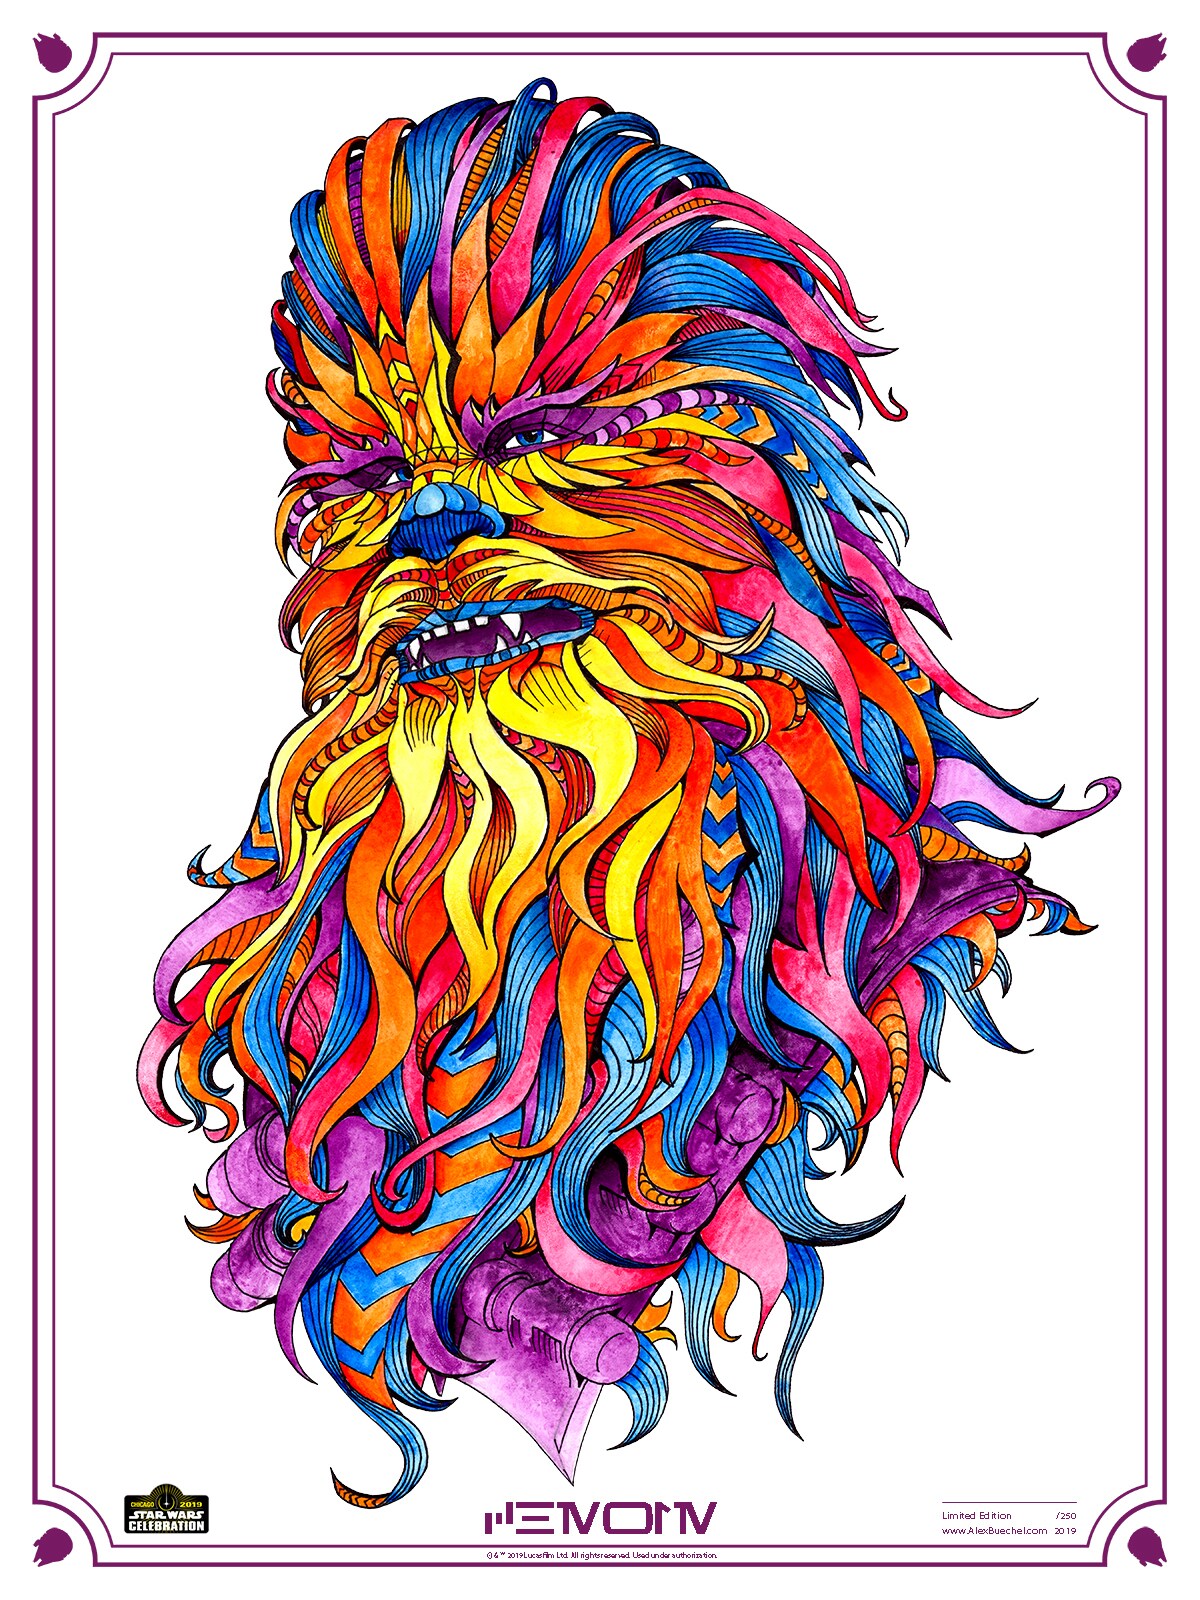 A vibrantly multicolored Chewbacca portrait.